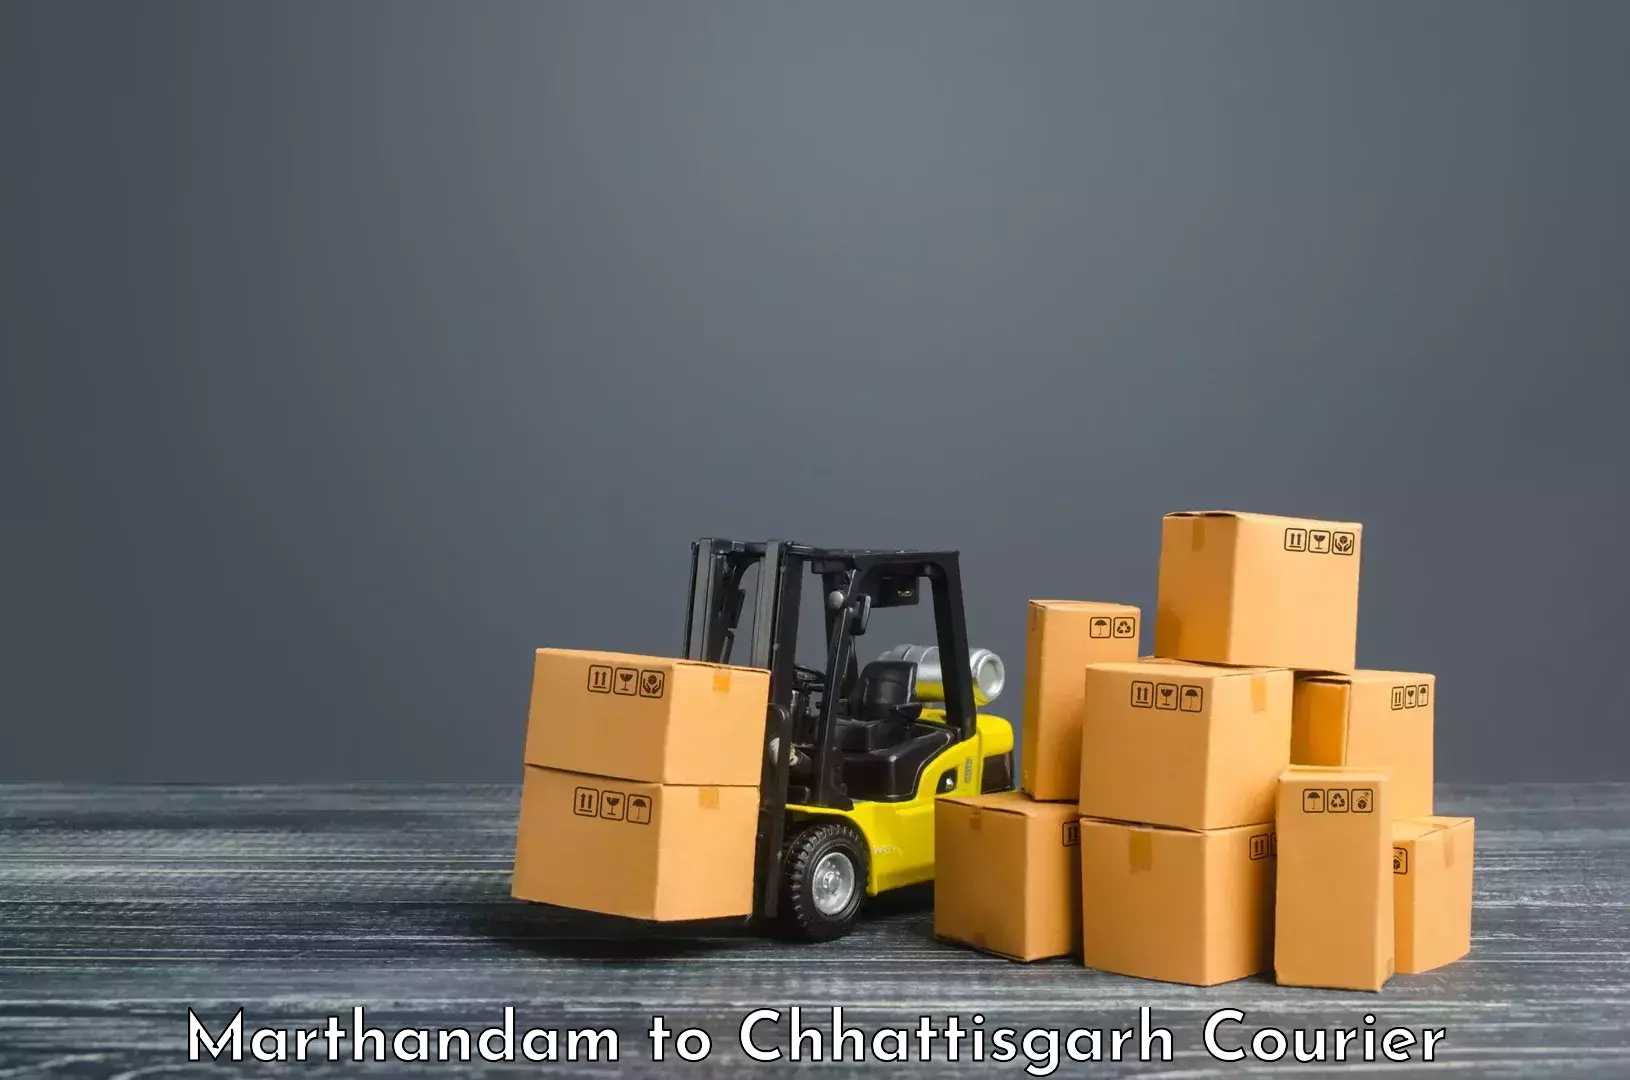 Specialized shipment handling Marthandam to Pithora